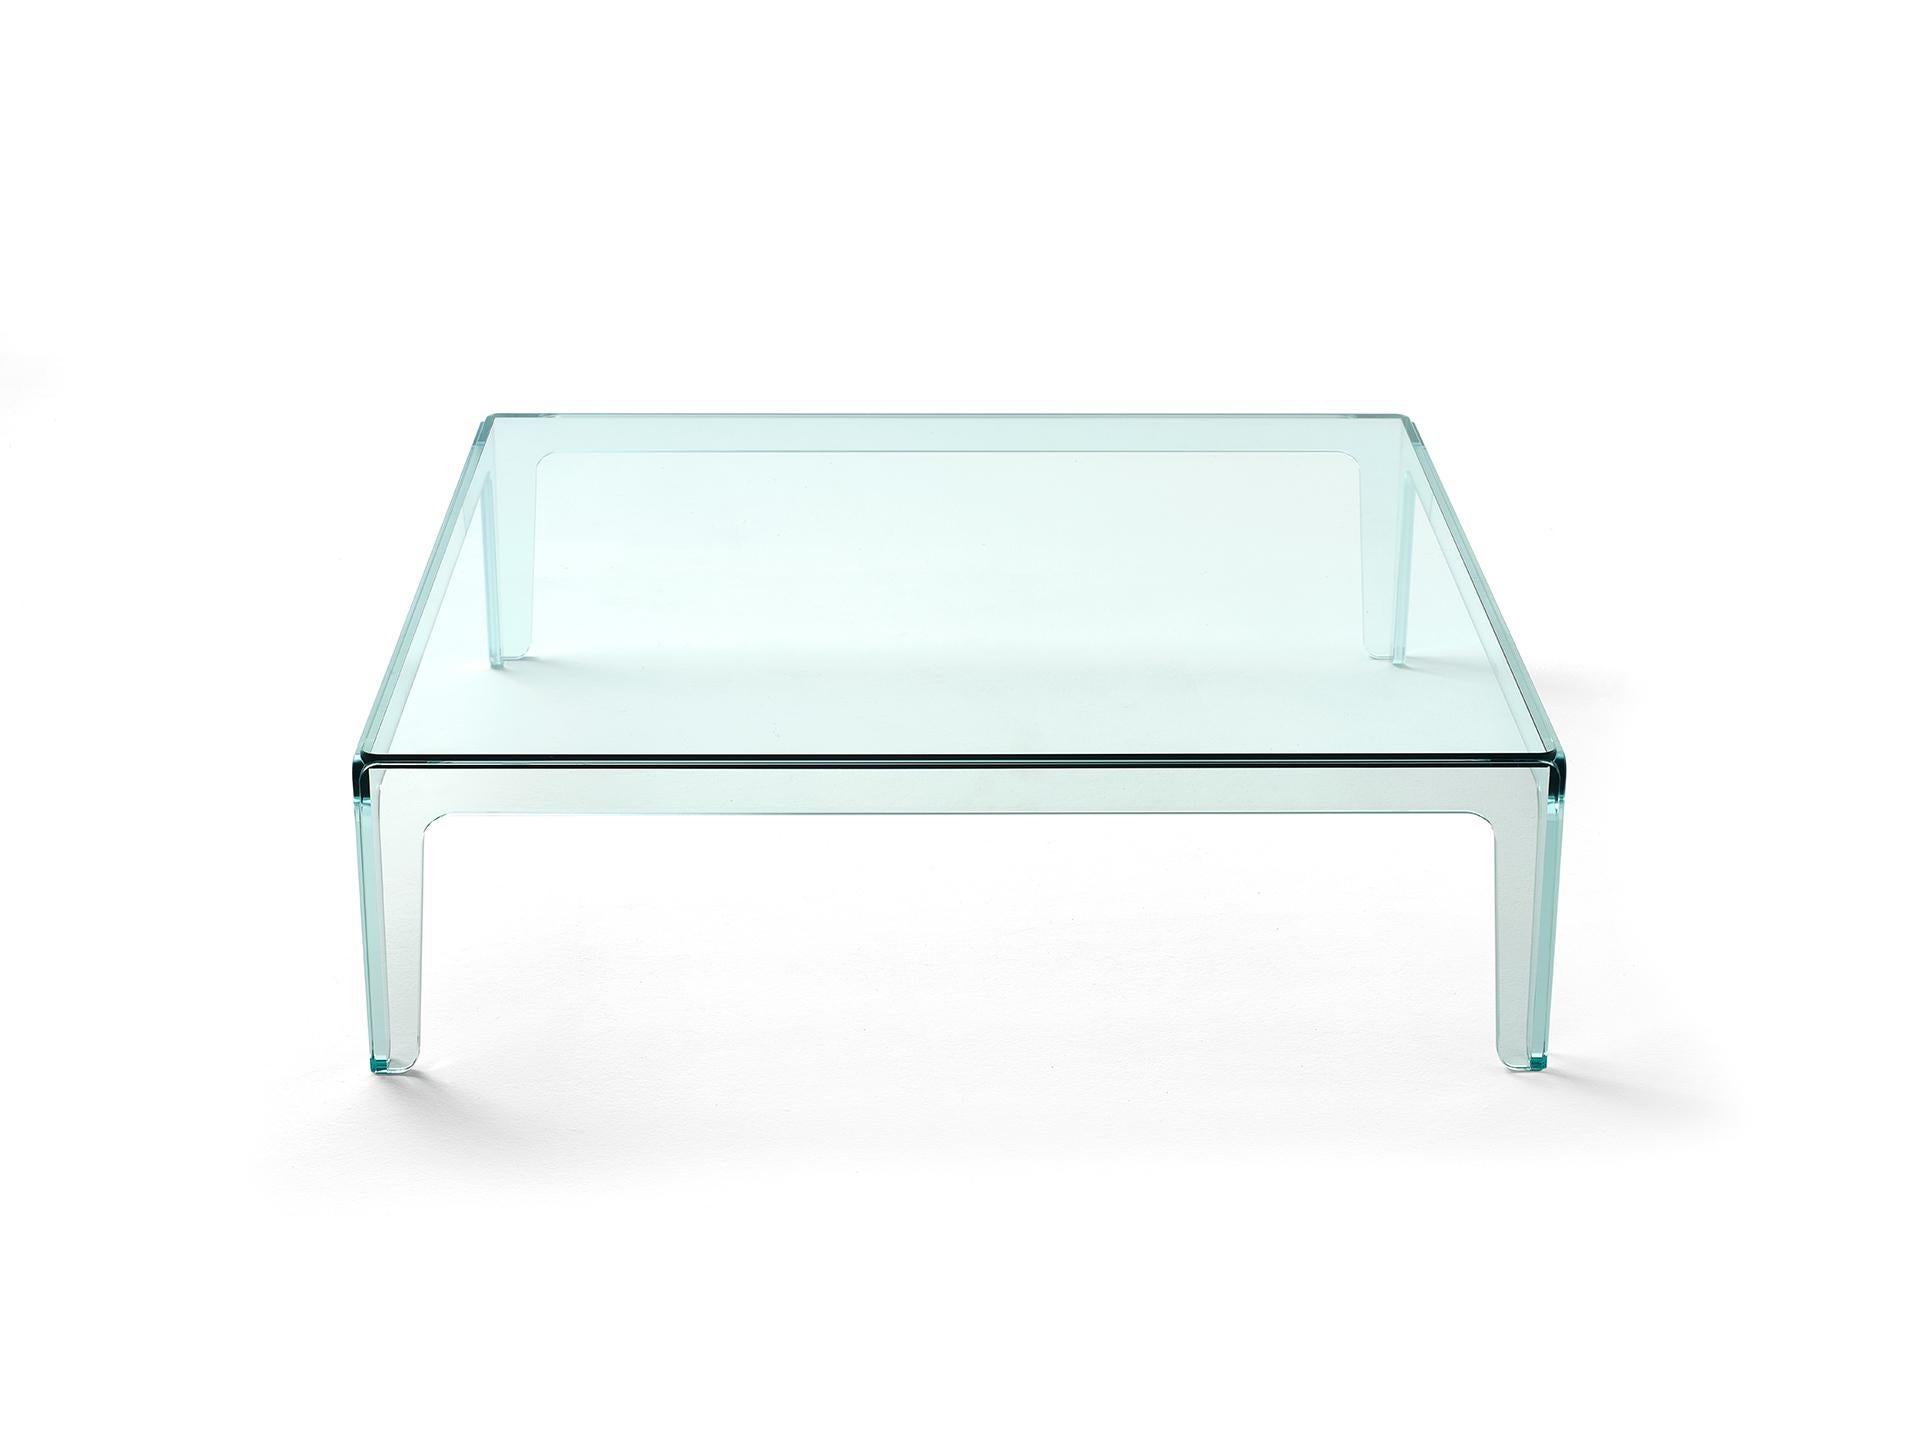 Ghost ist ein 4-beiniger, komplett aus Glas gefertigter, niedriger Tisch. Er ist die transparente Version unseres meistverkauften Rock-Tisches und hat das gleiche originelle skulpturale Detail. Doch während die Marmorversion die Illusion eines aus